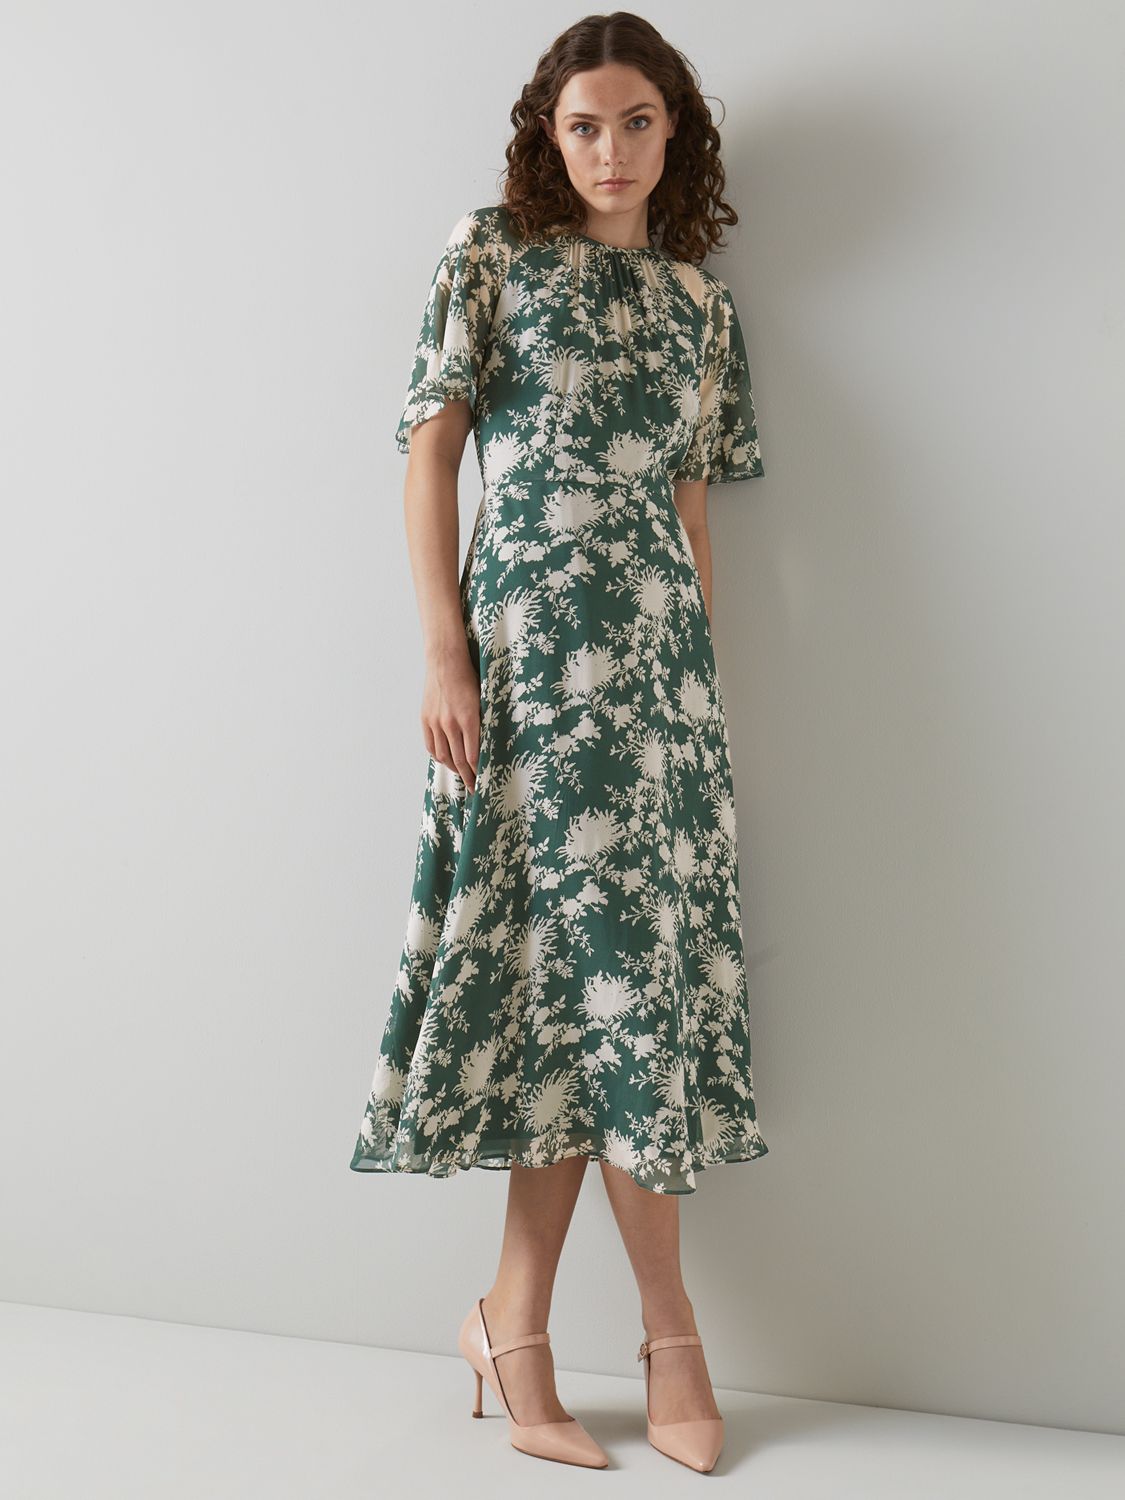 L.K.Bennett Elowen Floral Print Midi Dress, Green at John Lewis & Partners